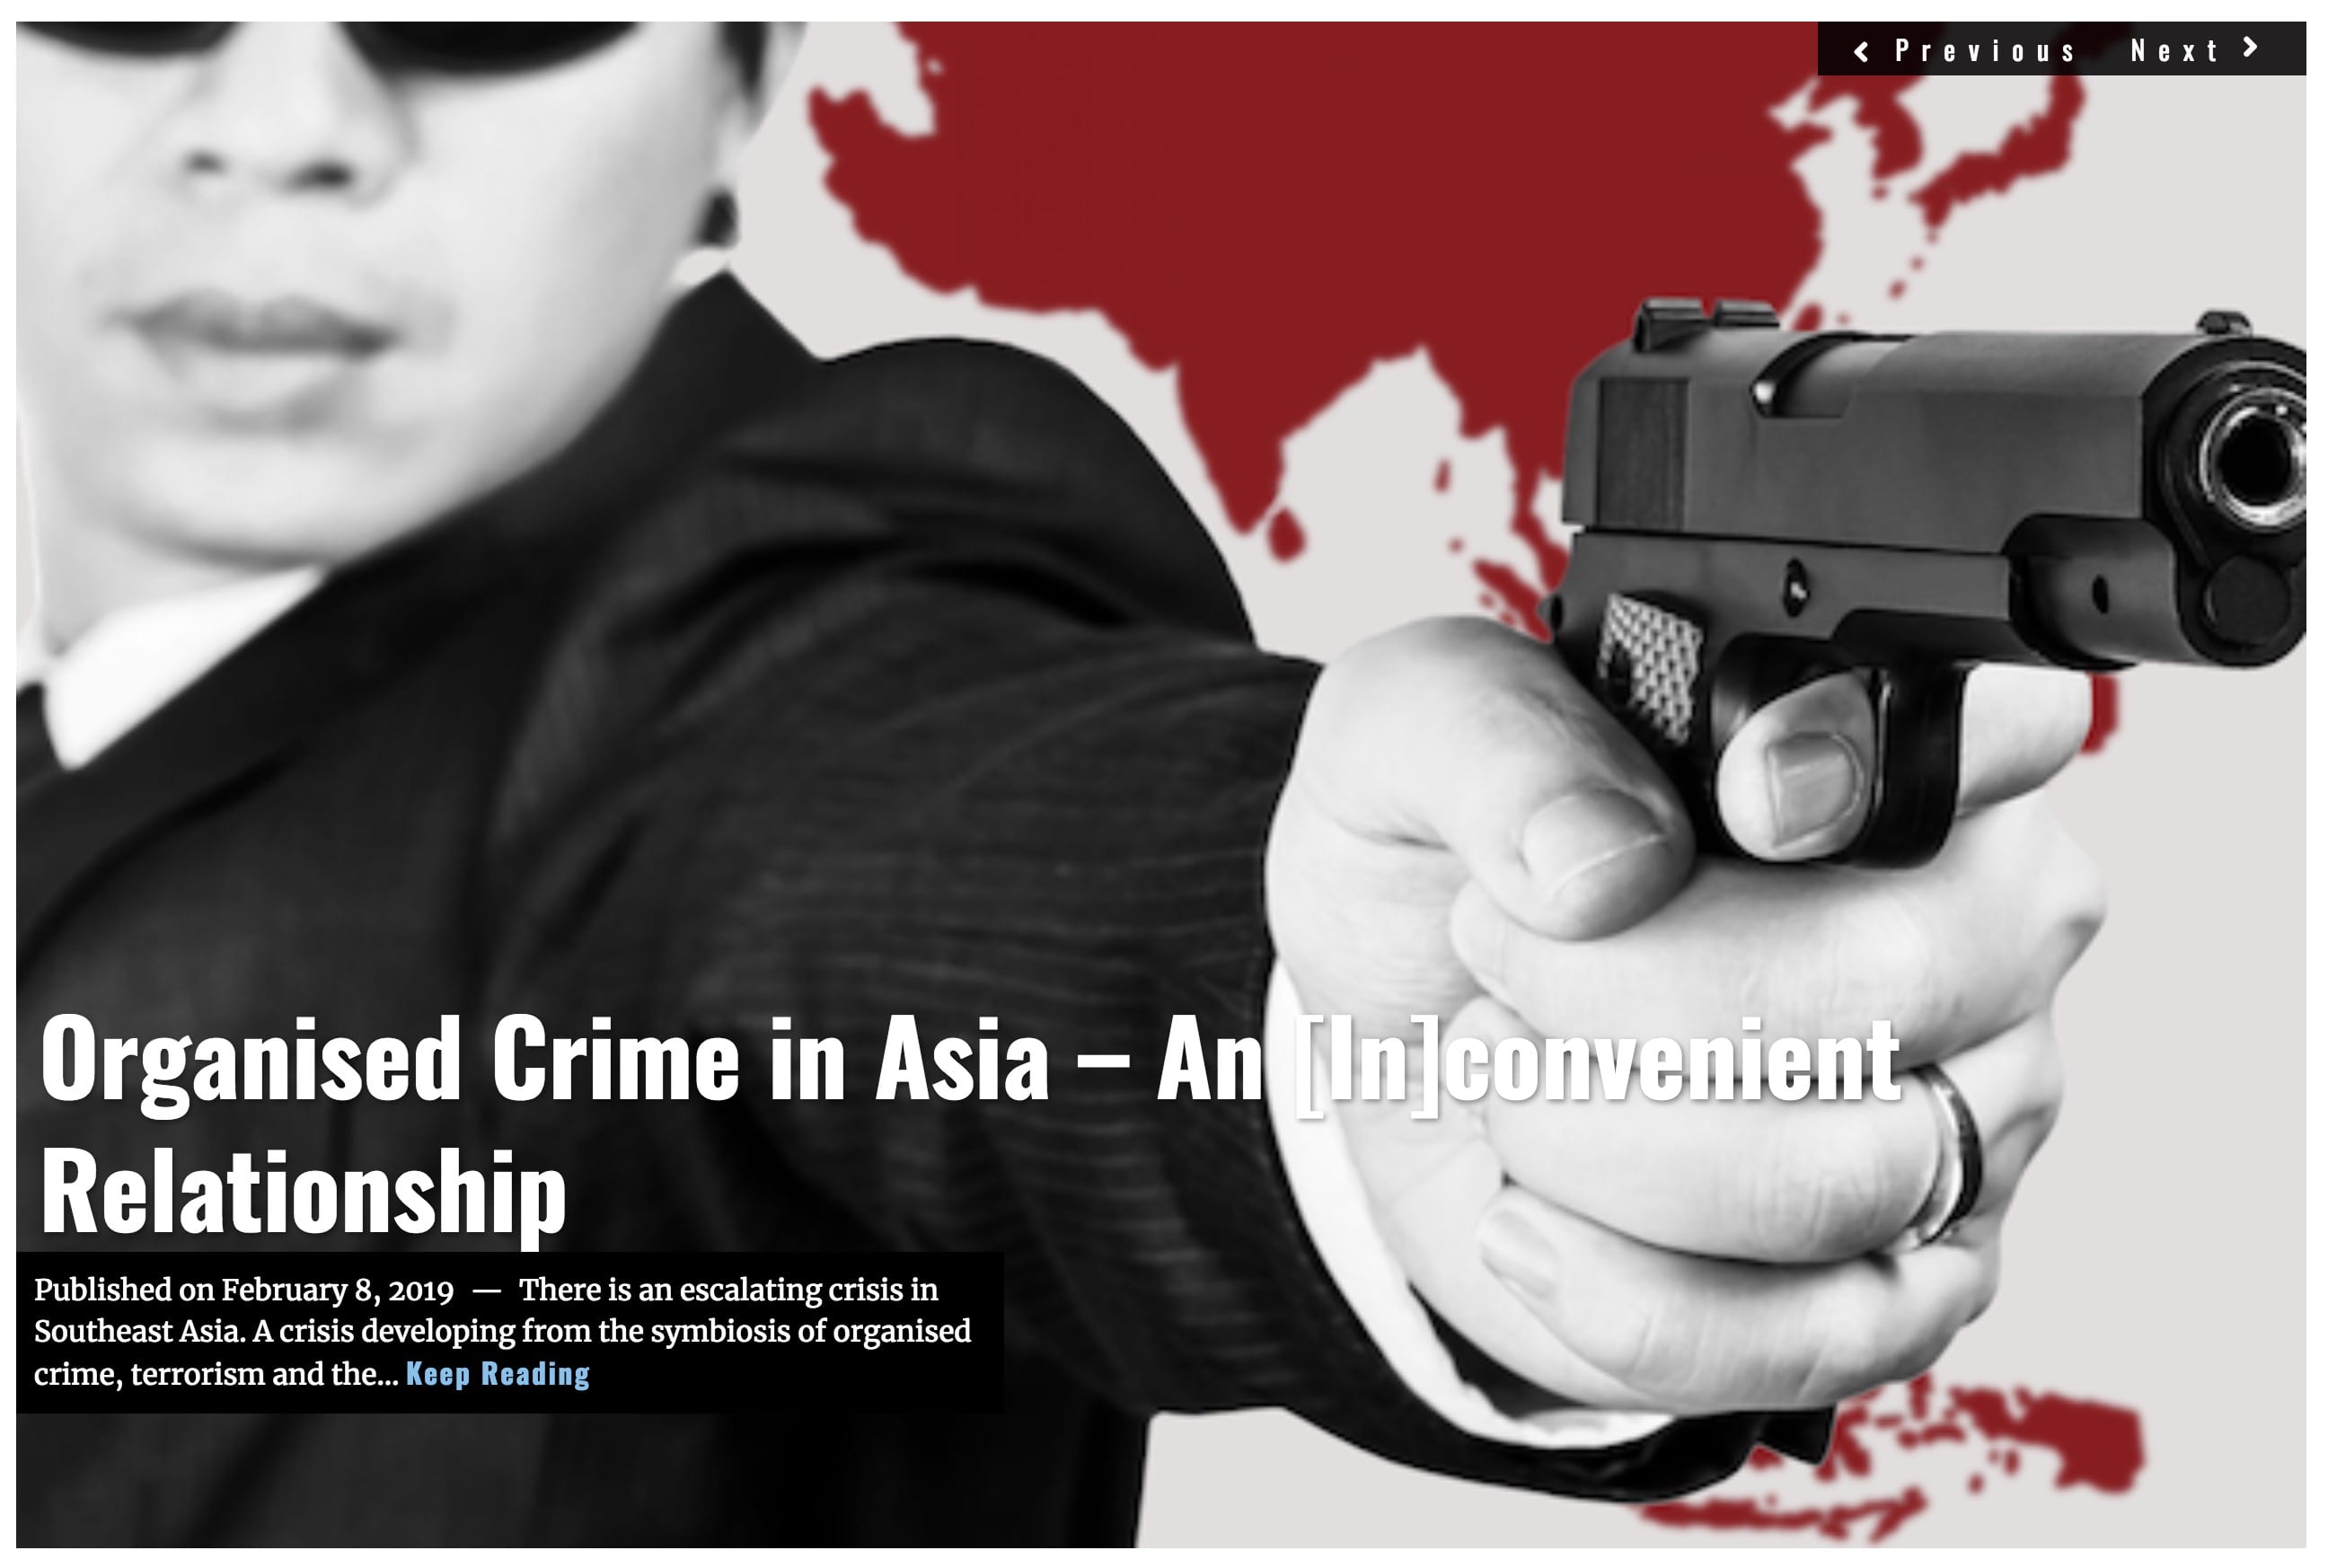 Lima-Charlie-News-Headline-Organised-Crime-Asia-FEB-8-2019.jpg